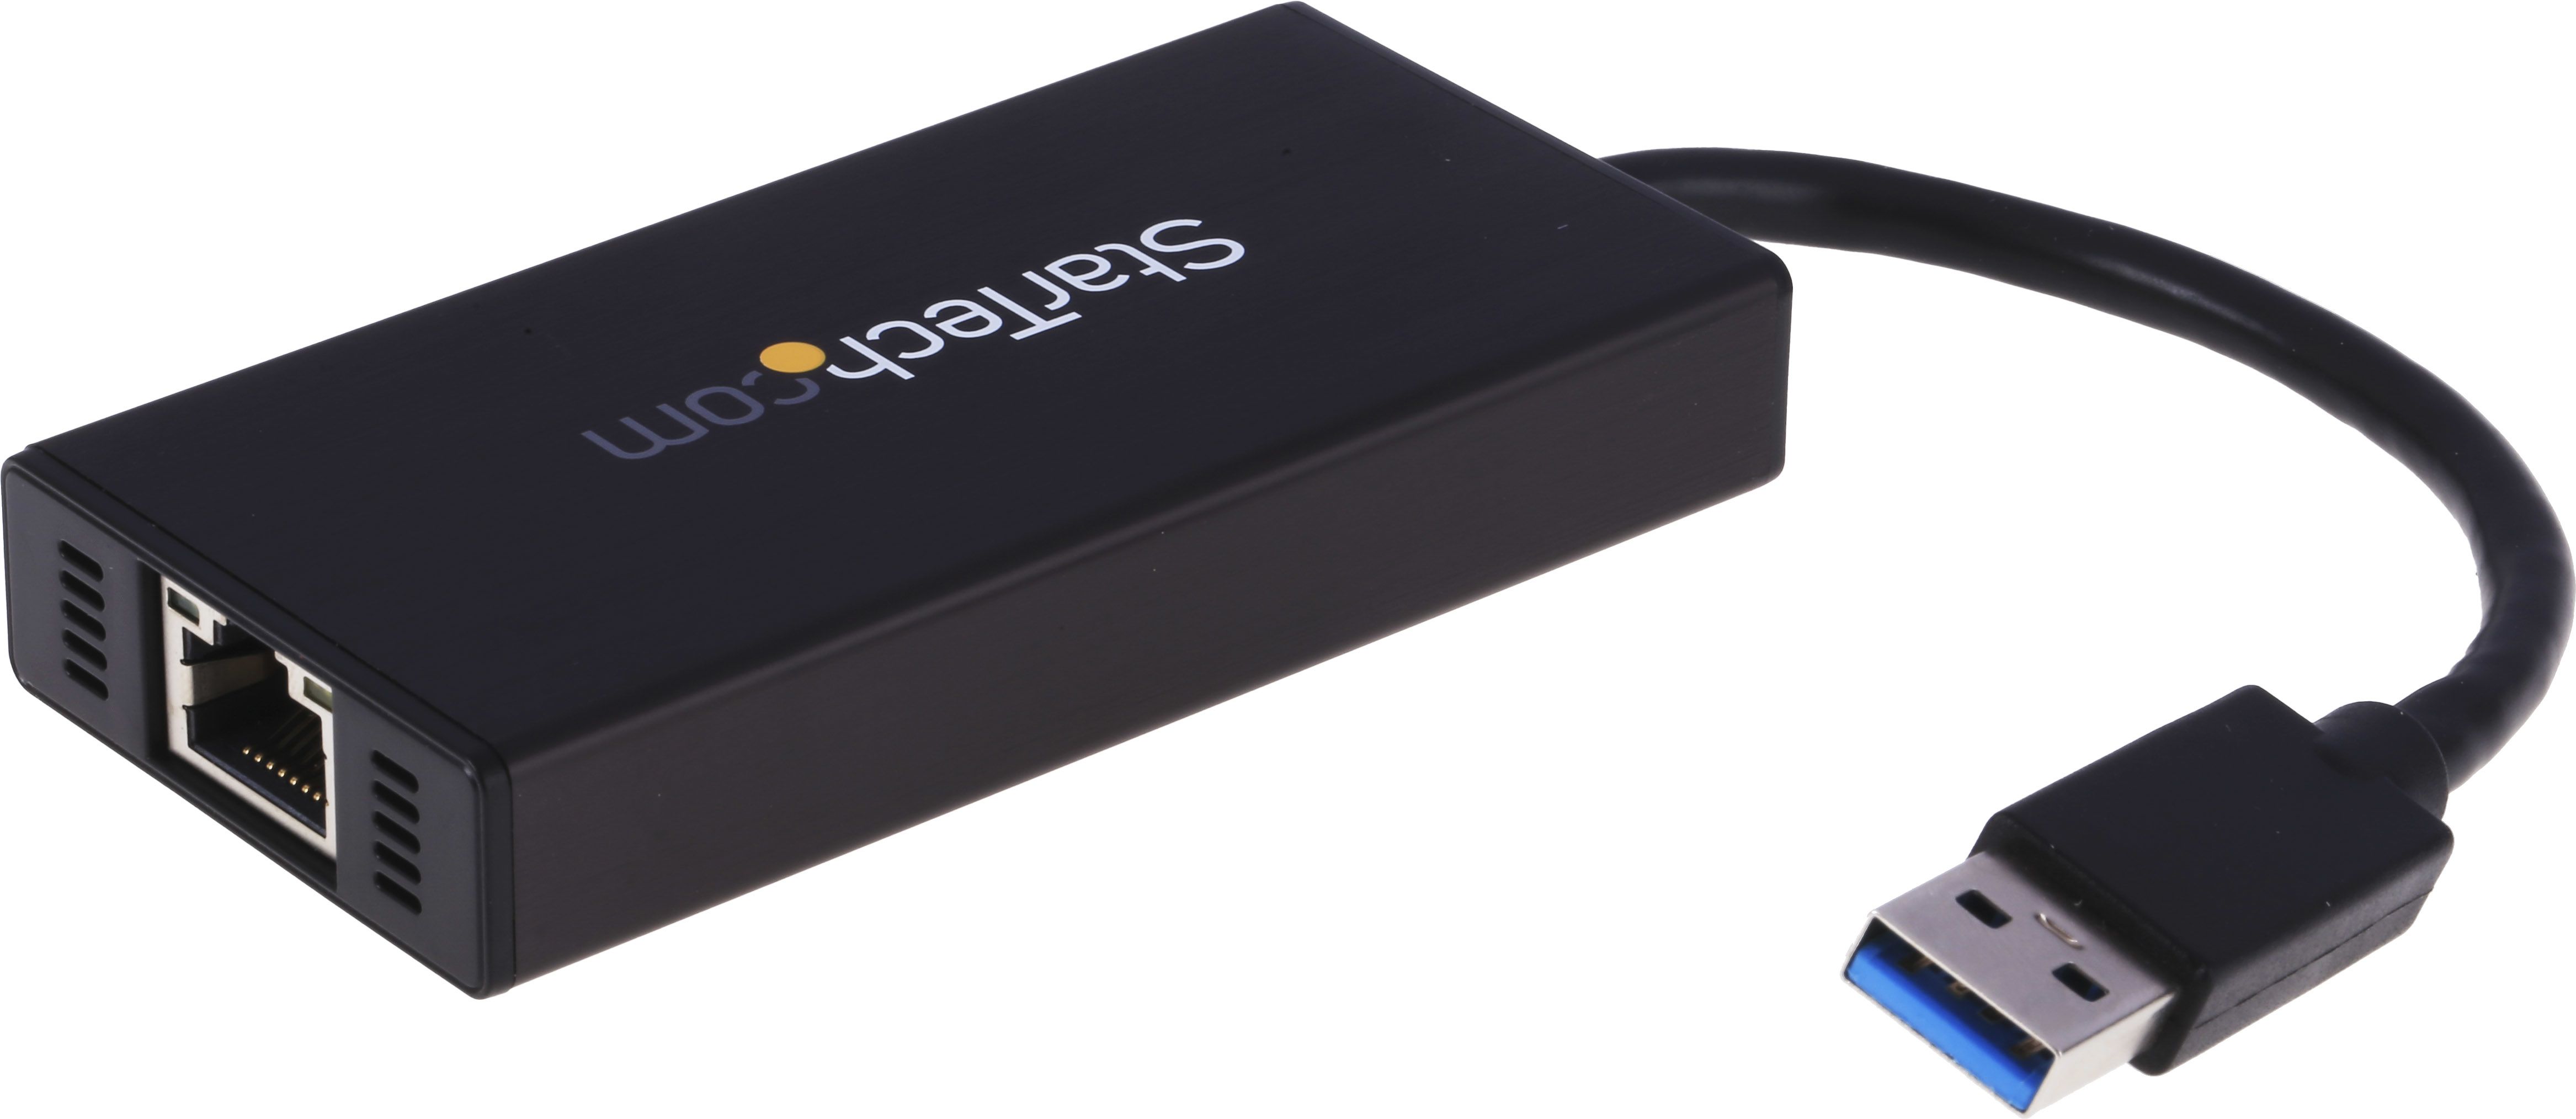 Hub USB StarTech.com, ST3300GU3B, USB 3.0 RJ45 3 Adaptador de a.c. USB A